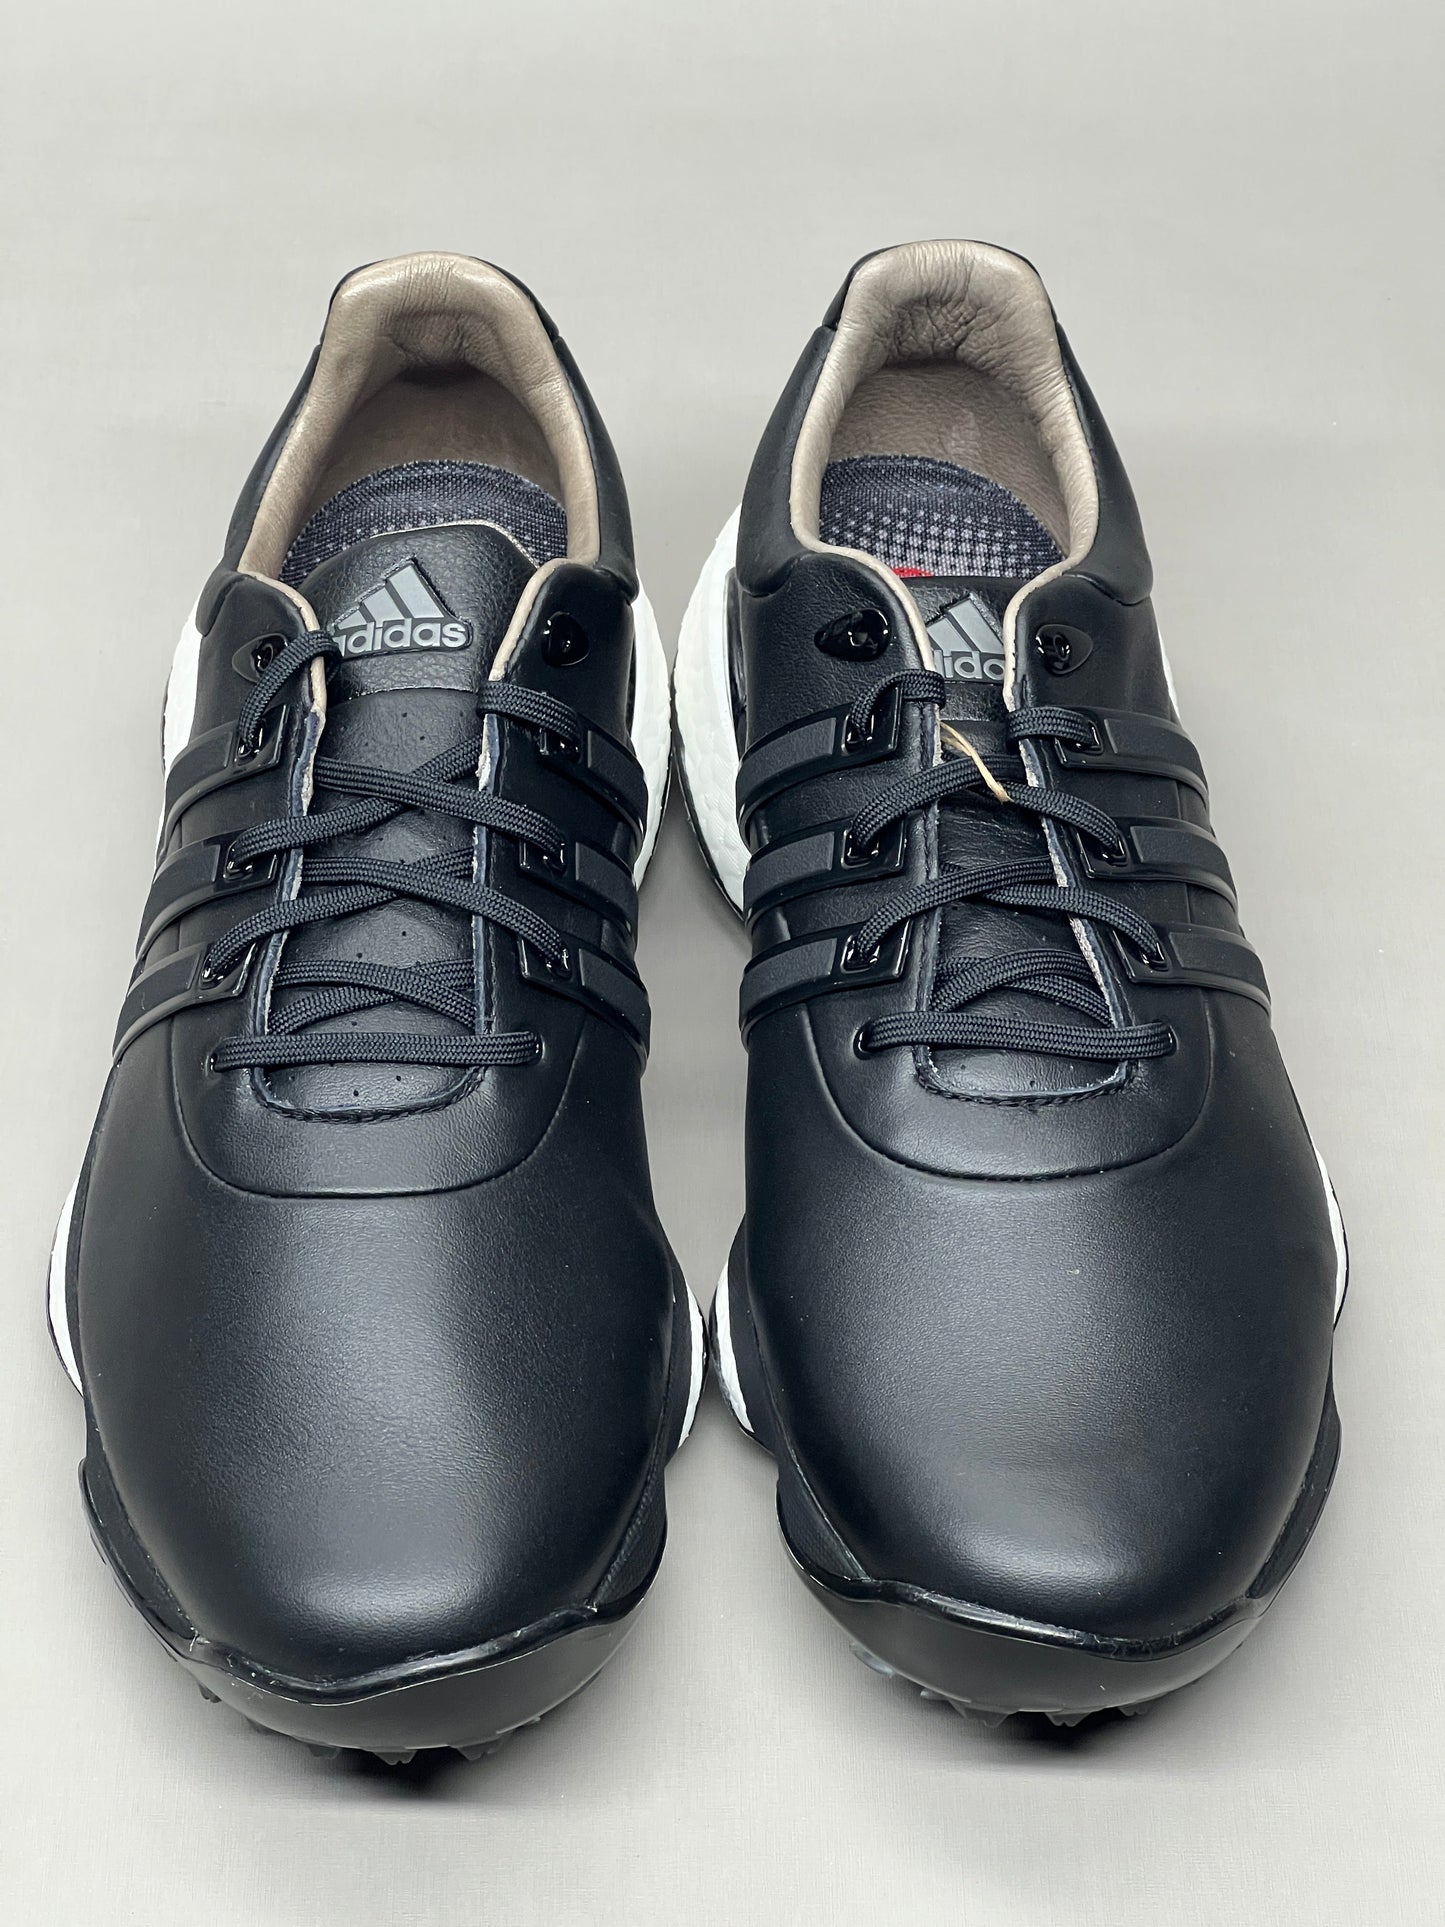 ADIDAS Golf Shoes TOUR360 22 Leather Men's Sz 14 Black / Iron Metallic GZ3158 (New)